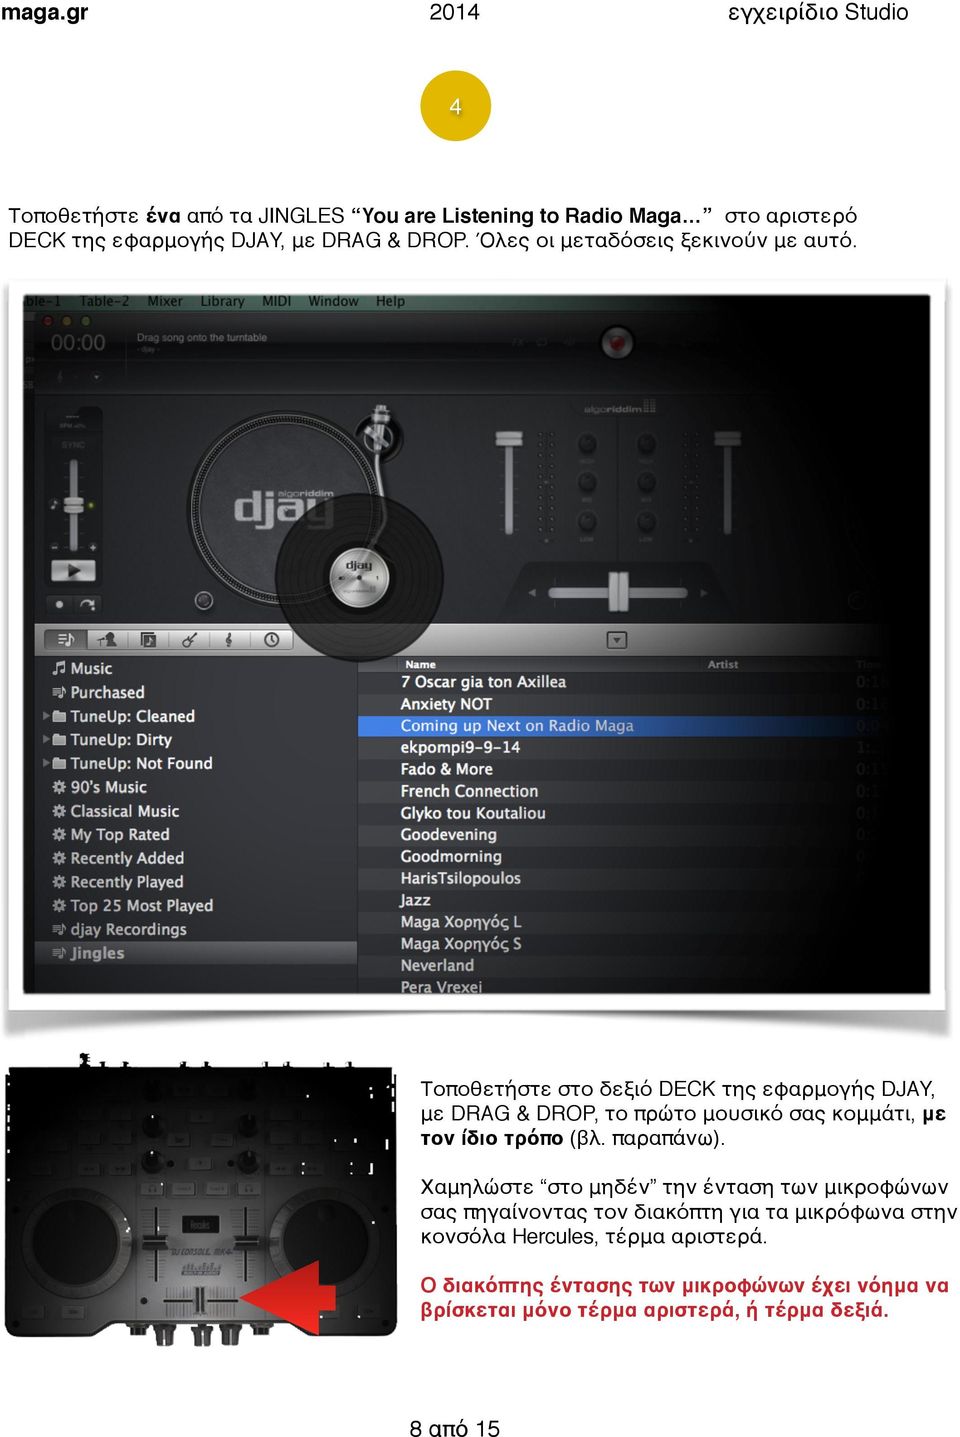 Τοποθετήστε στο δεξιό DECK της εφαρμογής DJAY, με DRAG & DROP, το πρώτο μουσικό σας κομμάτι, με τον ίδιο τρόπο (βλ. παραπάνω.